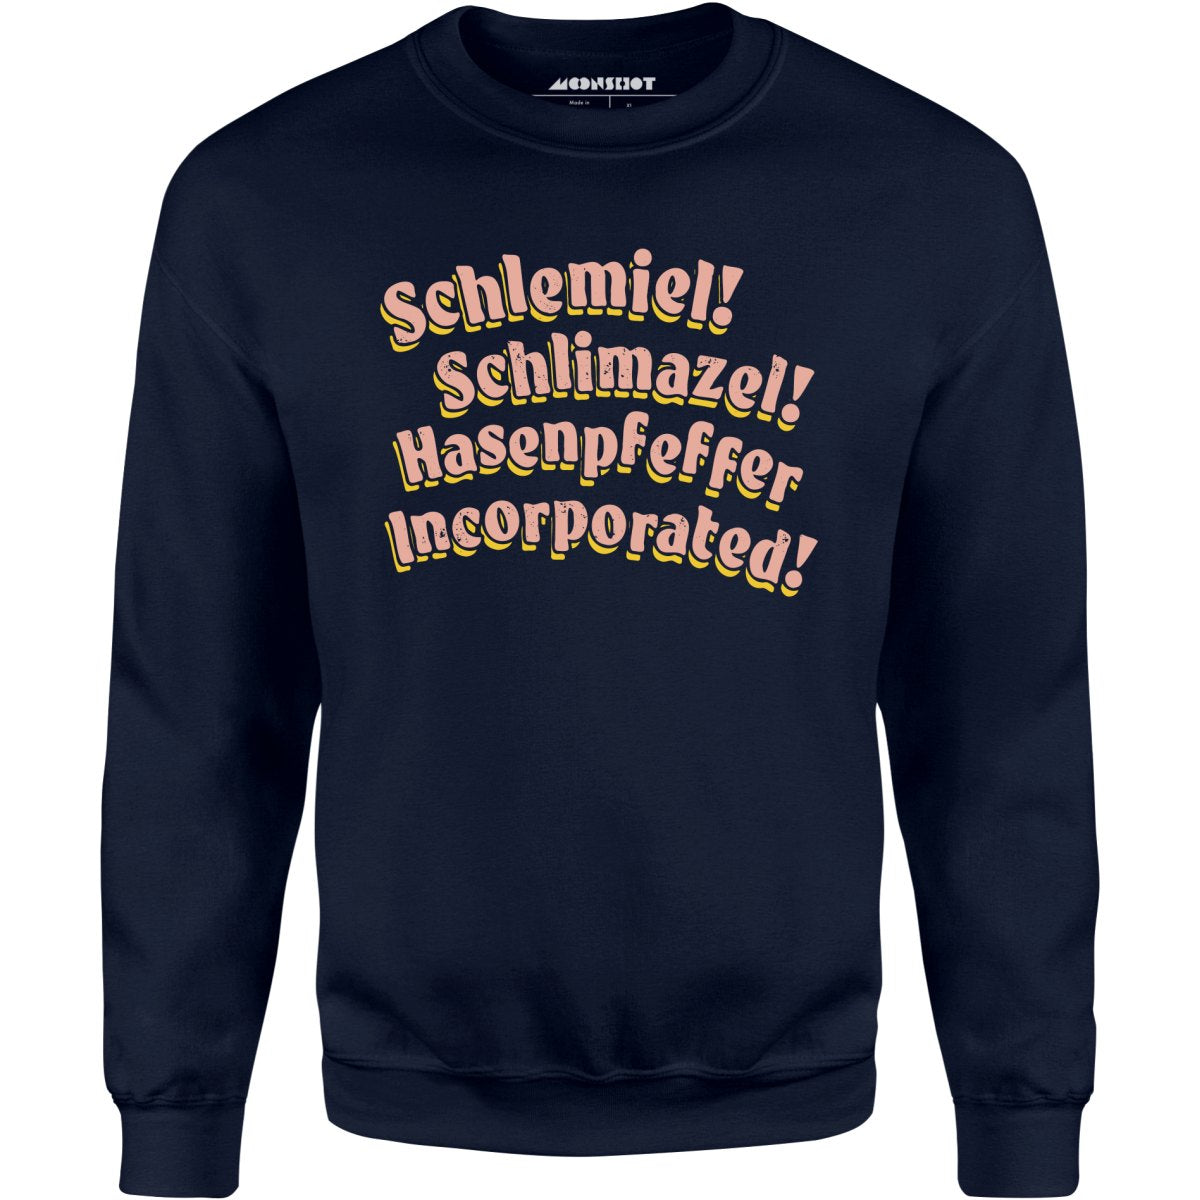 Schlemiel! Schlimazel! Hasenpfeffer Incorporated - Unisex Sweatshirt